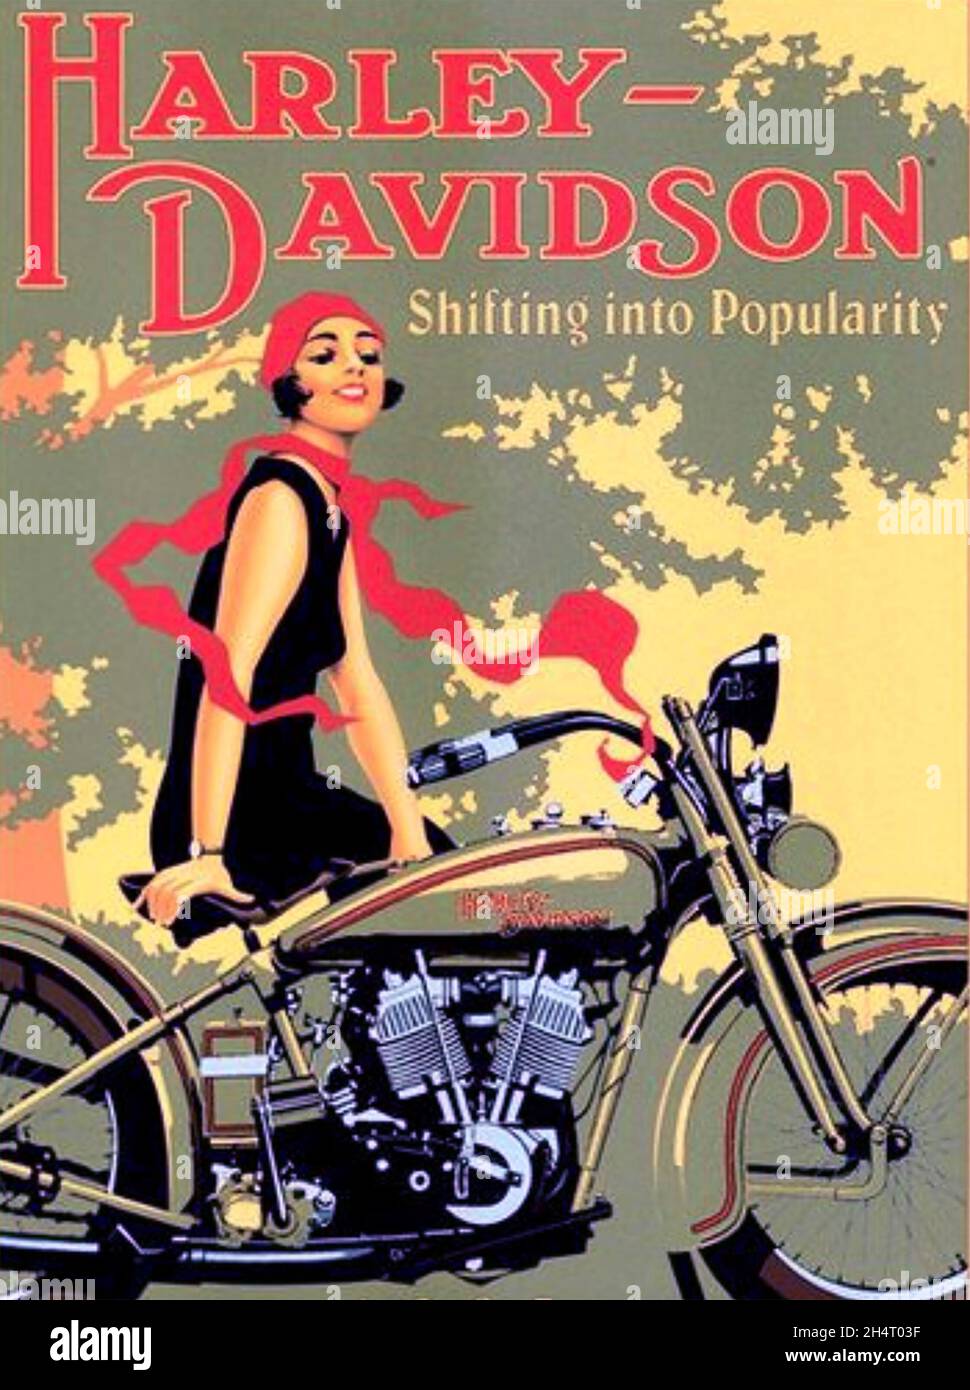 HARLEY-DAVIDSON fabricante de motocicletas americano. Cartel sobre 1930 Foto de stock